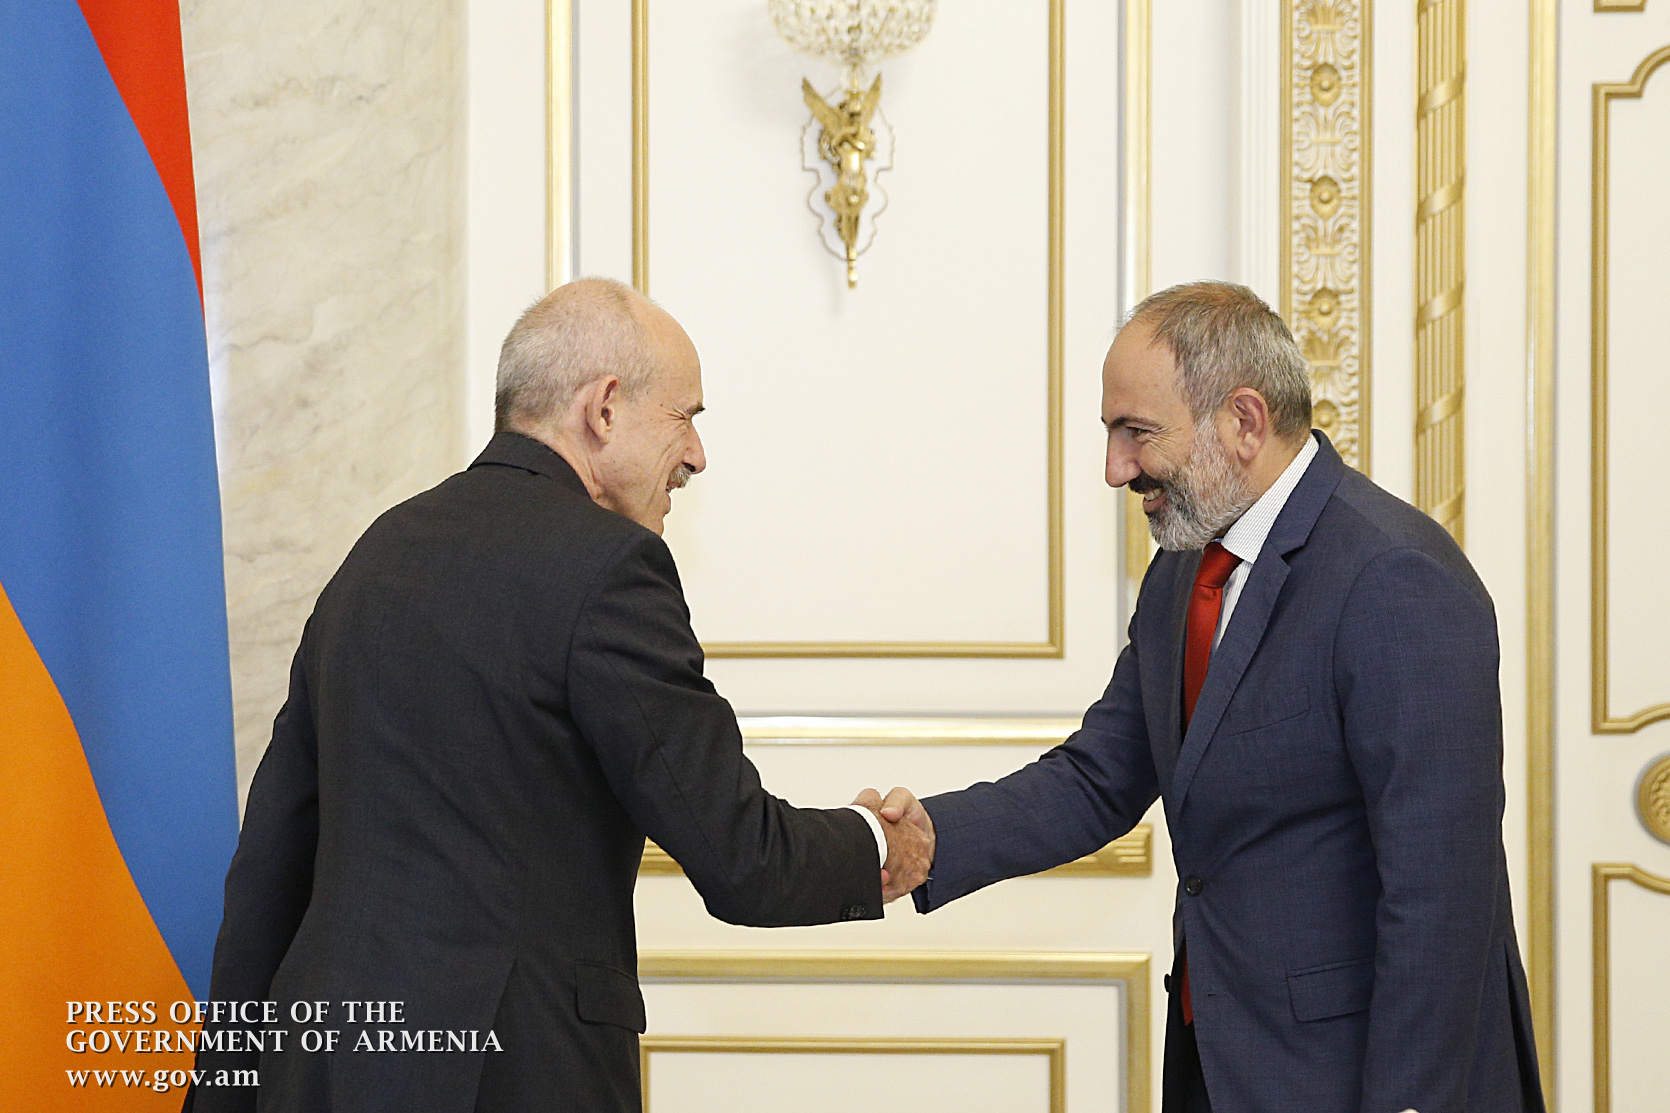 Германия продолжит содействие Армении для эффективного продвижения реформ - посол